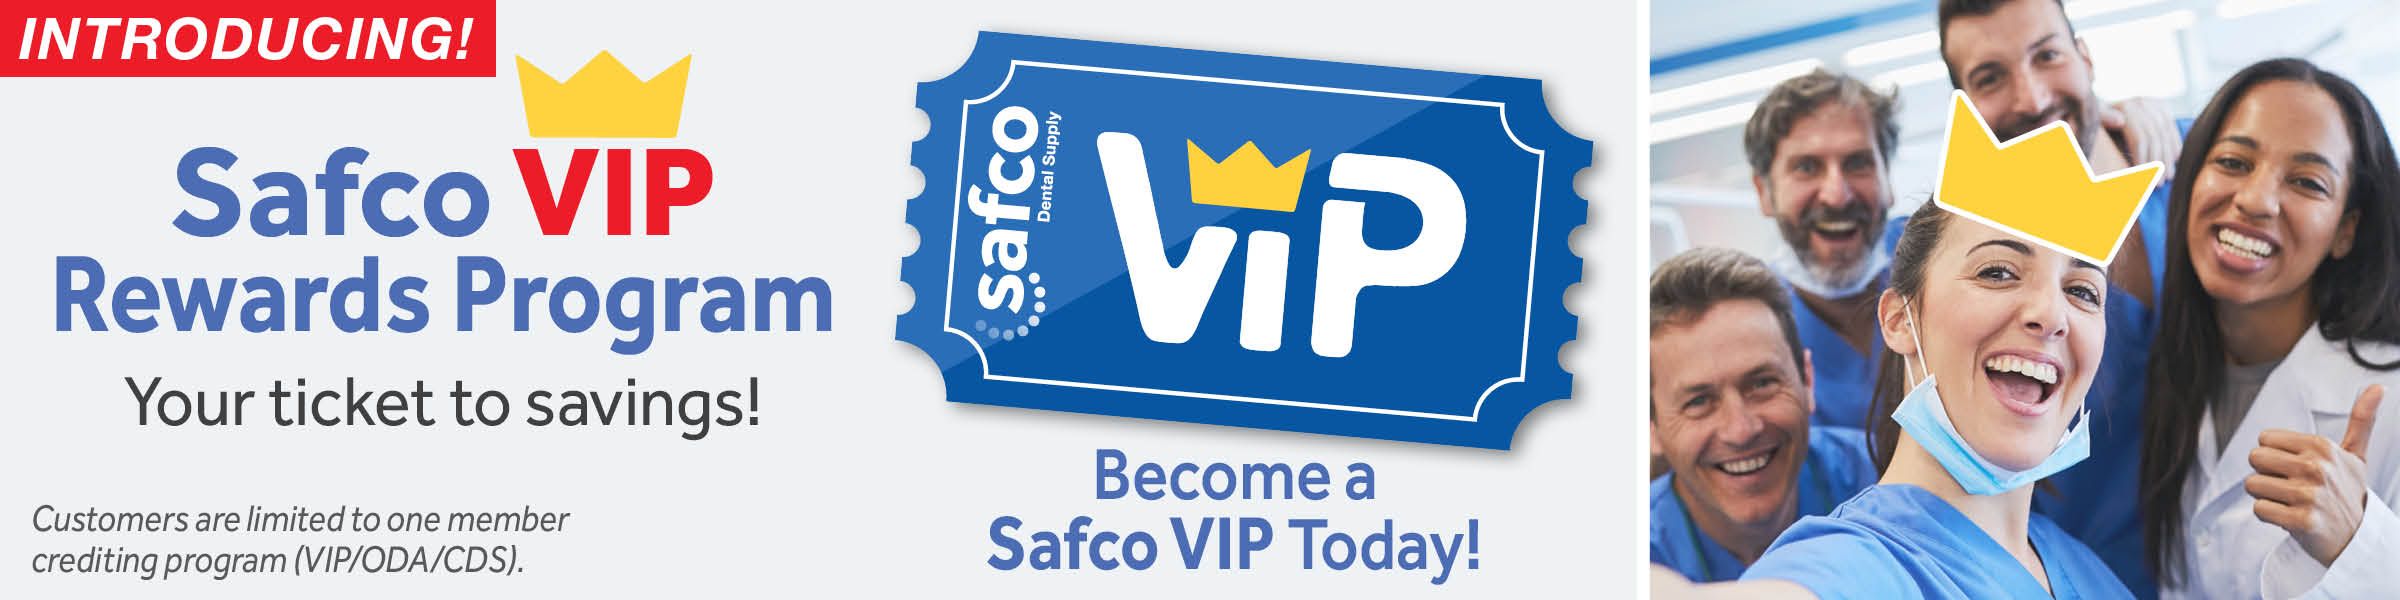 Safco Loyality VIP Program Header Image